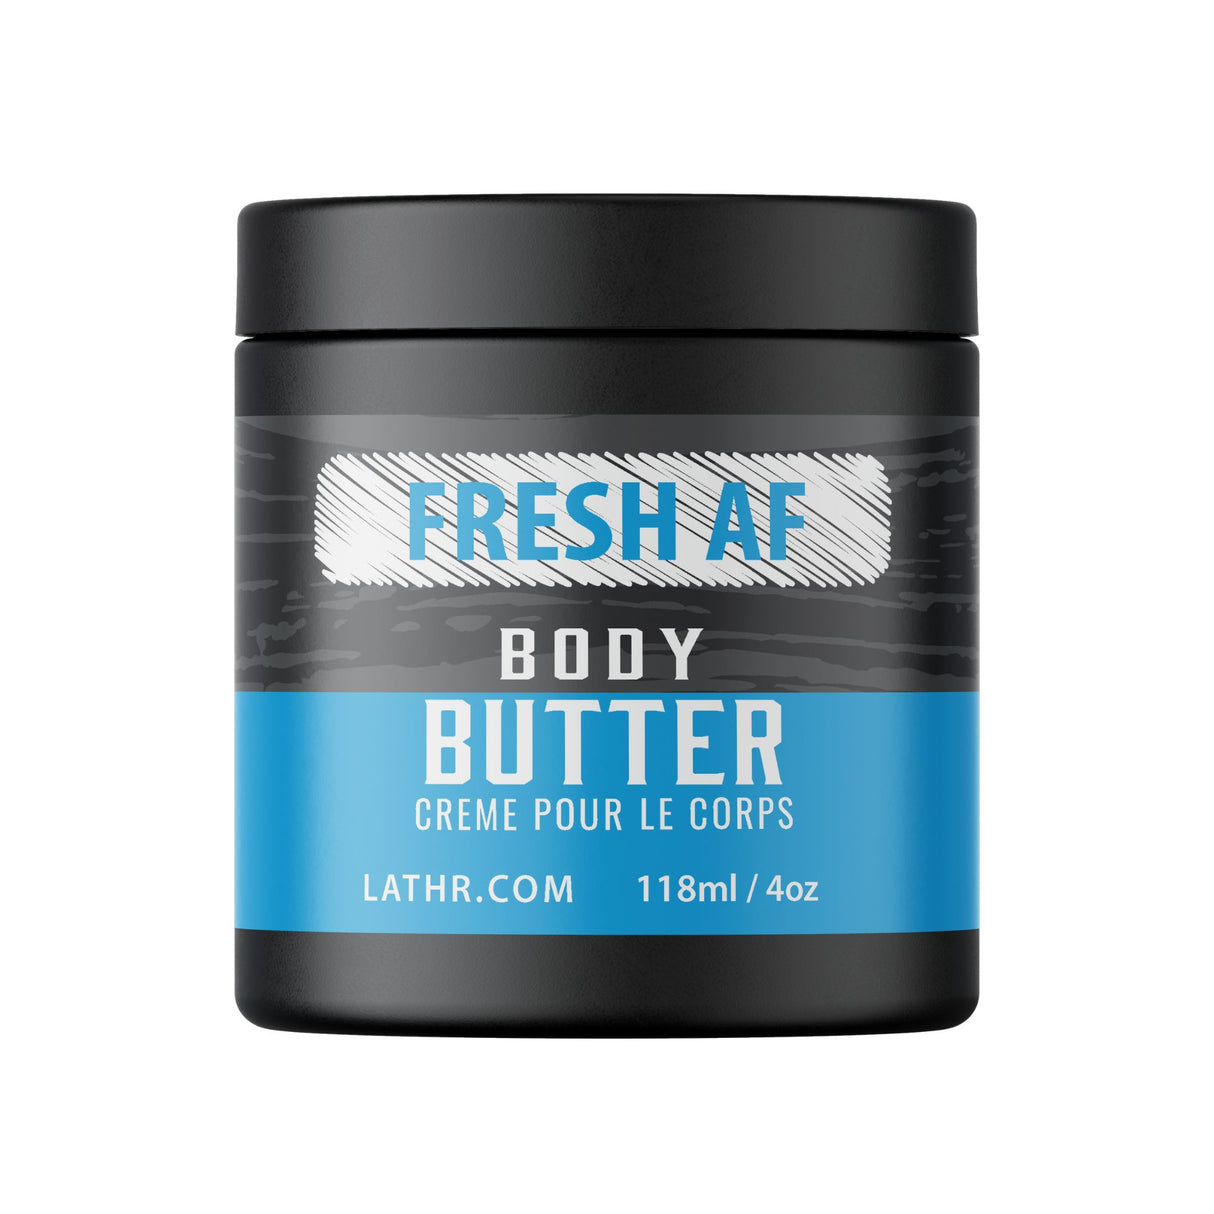 Body Butter - Fresh AF